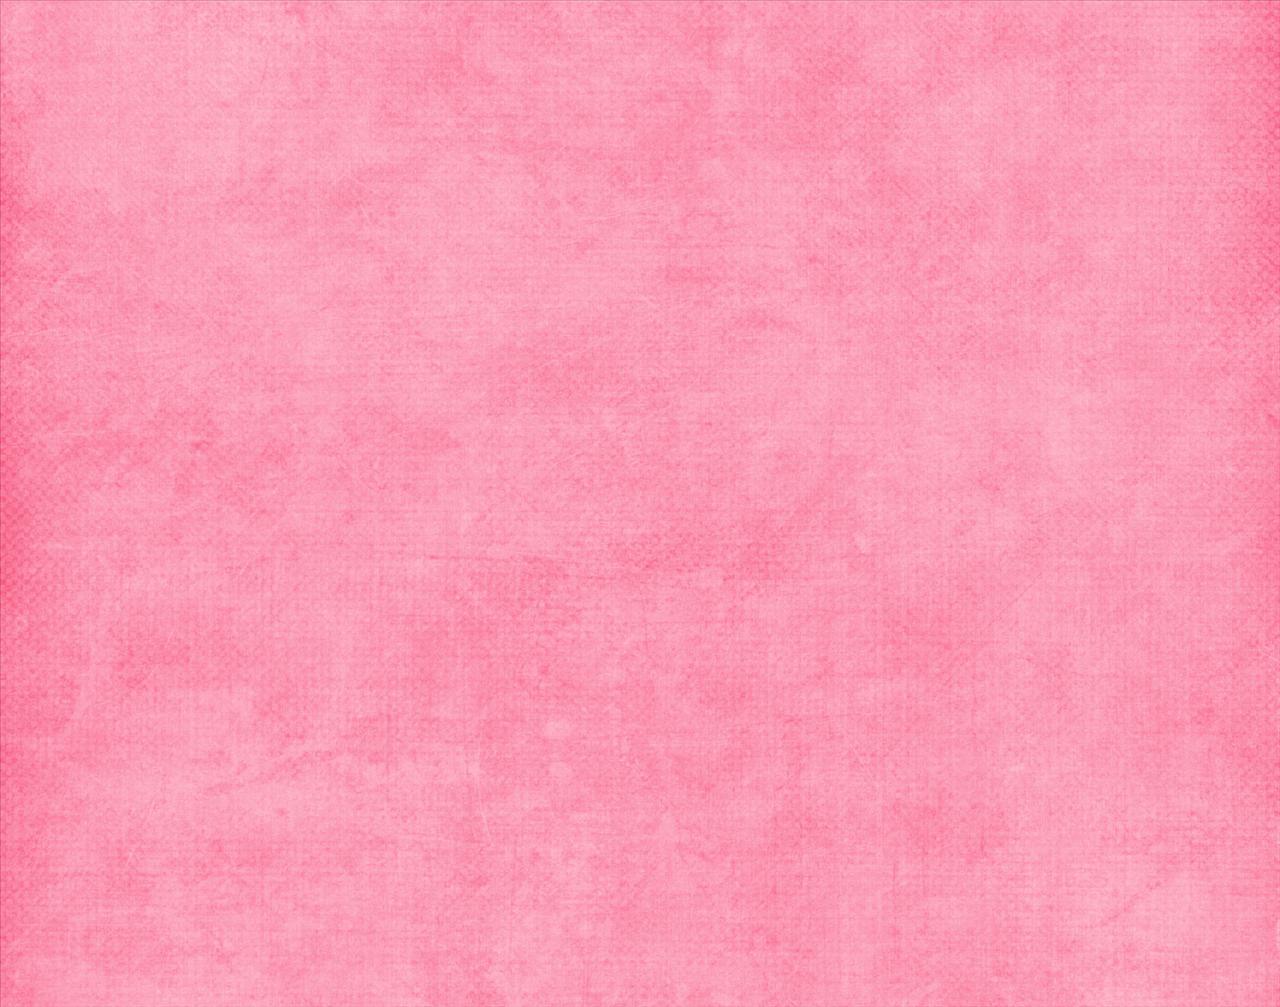 Bubblegum Pink Background Background